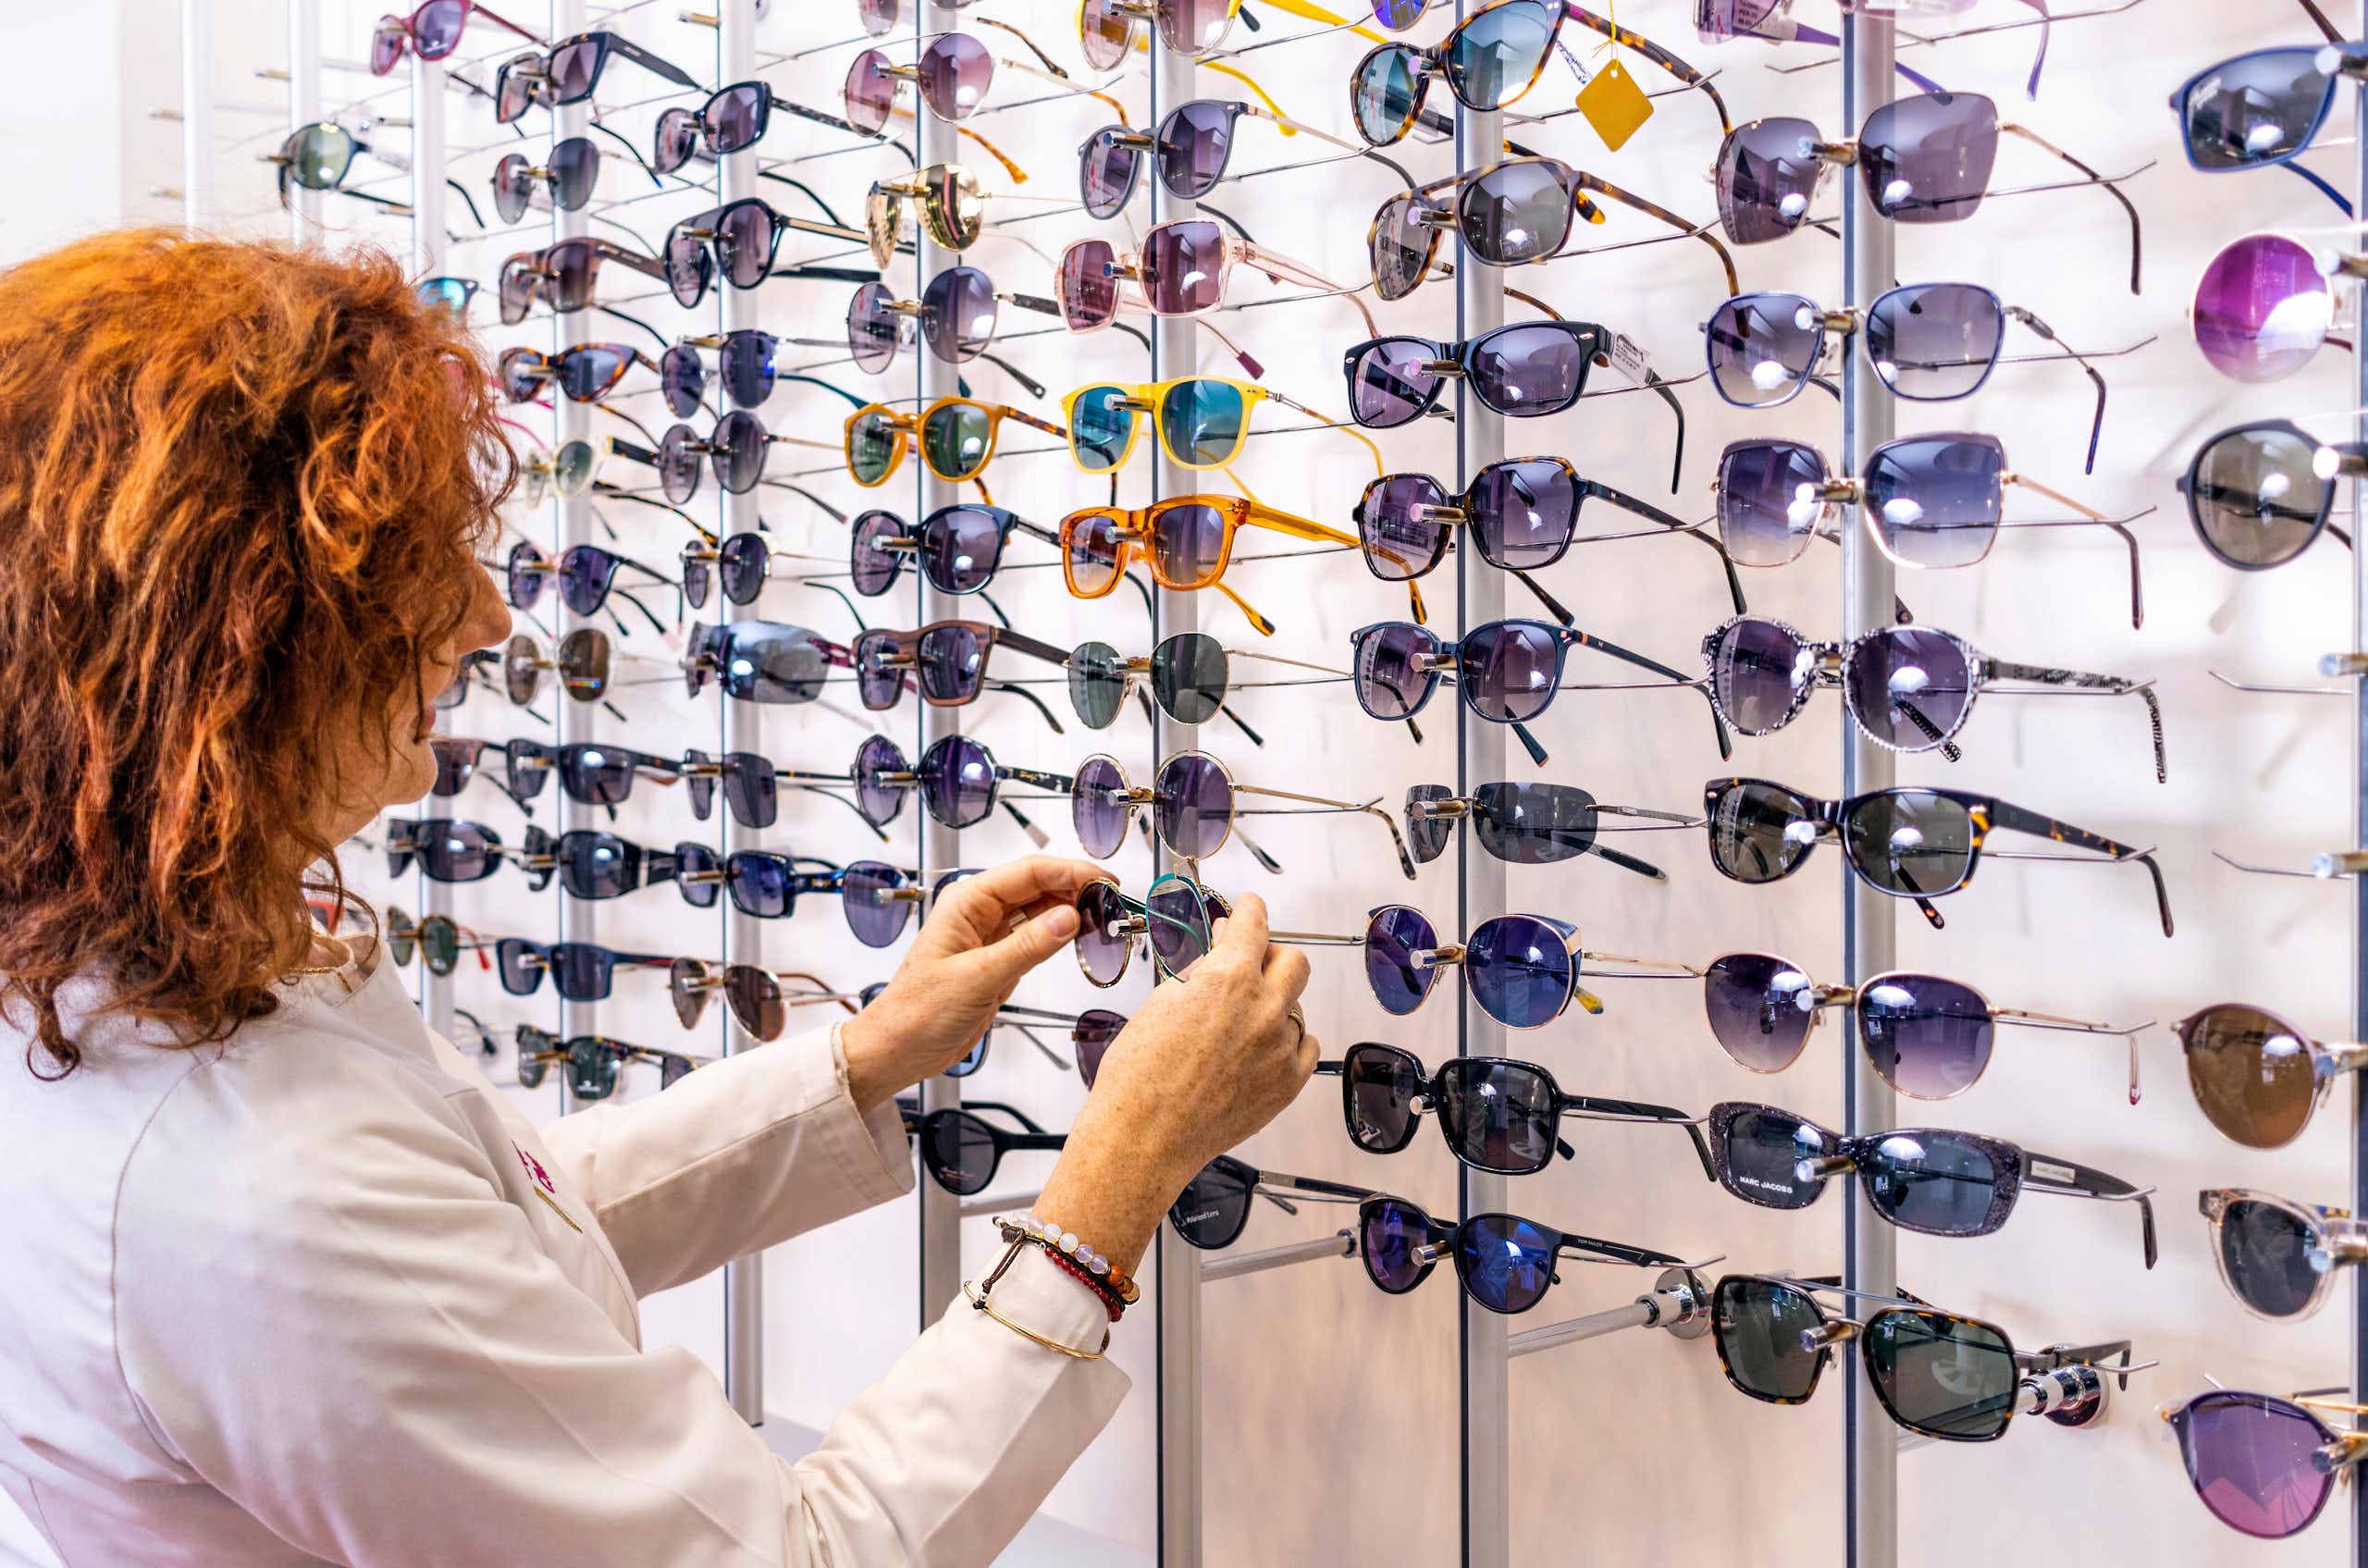 Lo que hay que tener en cuenta para elegir unas buenas gafas de sol